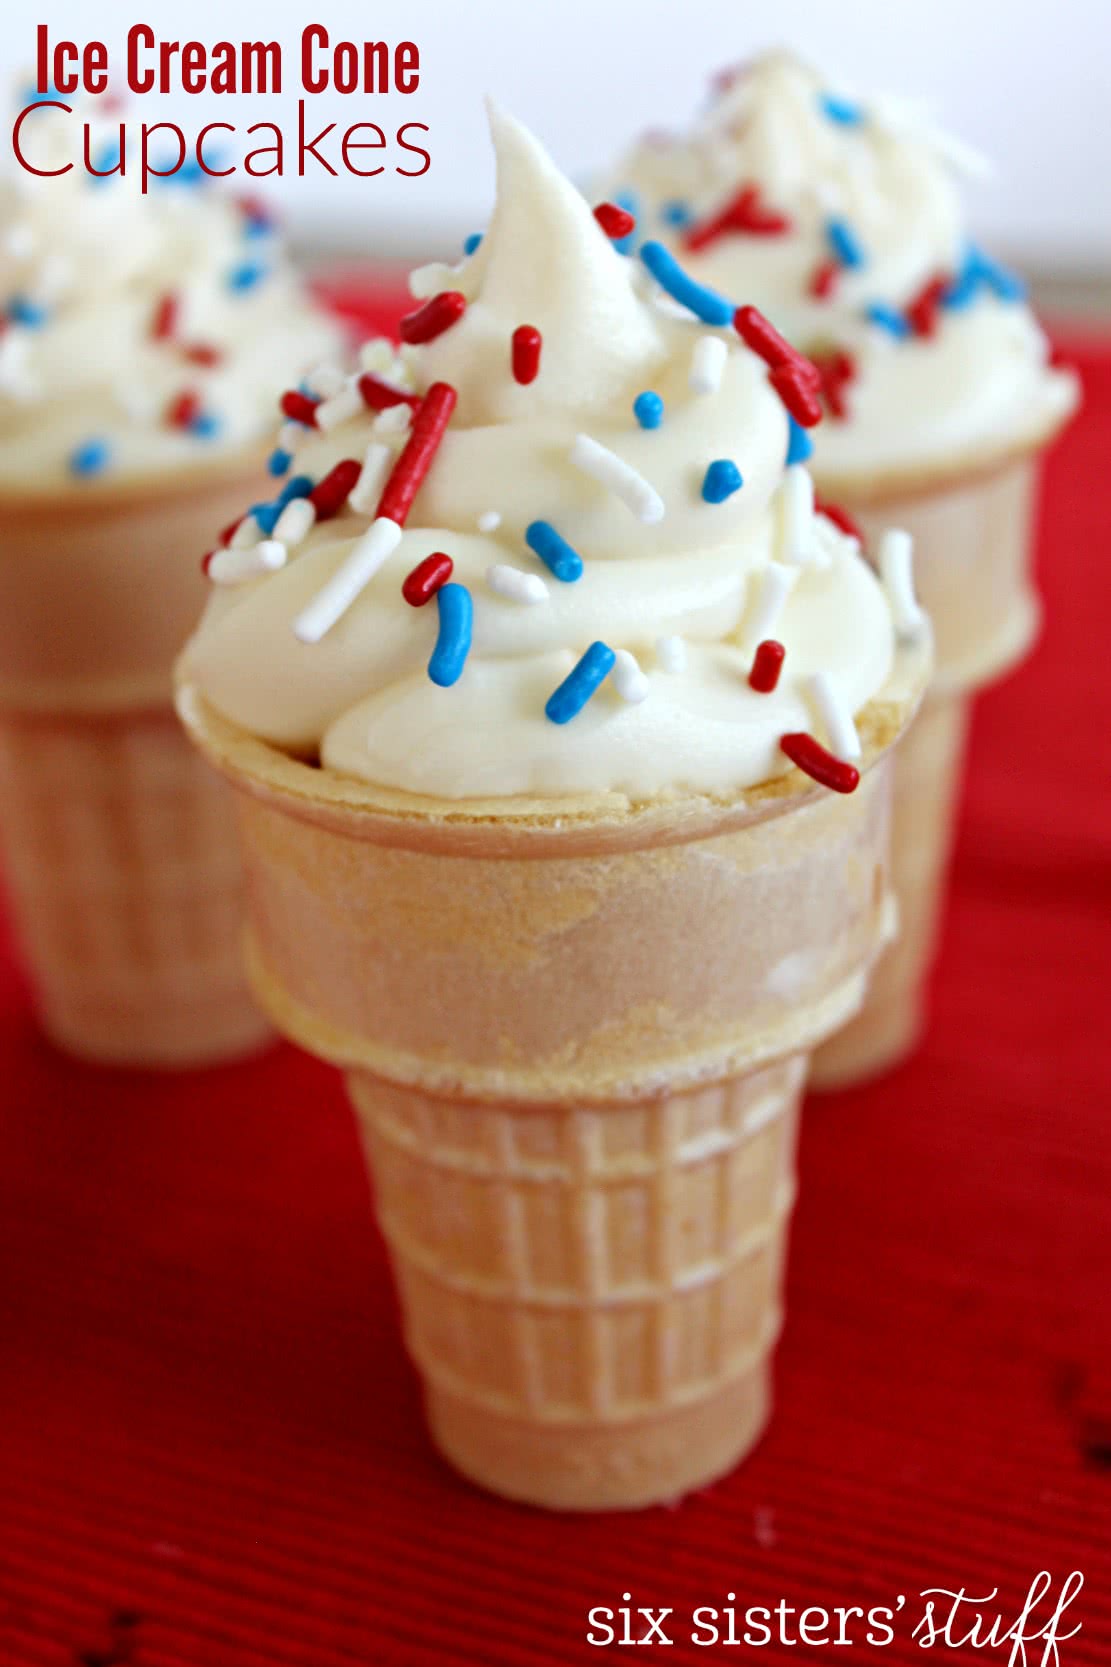 Ice Cream Cone Cupcakes Tutorial